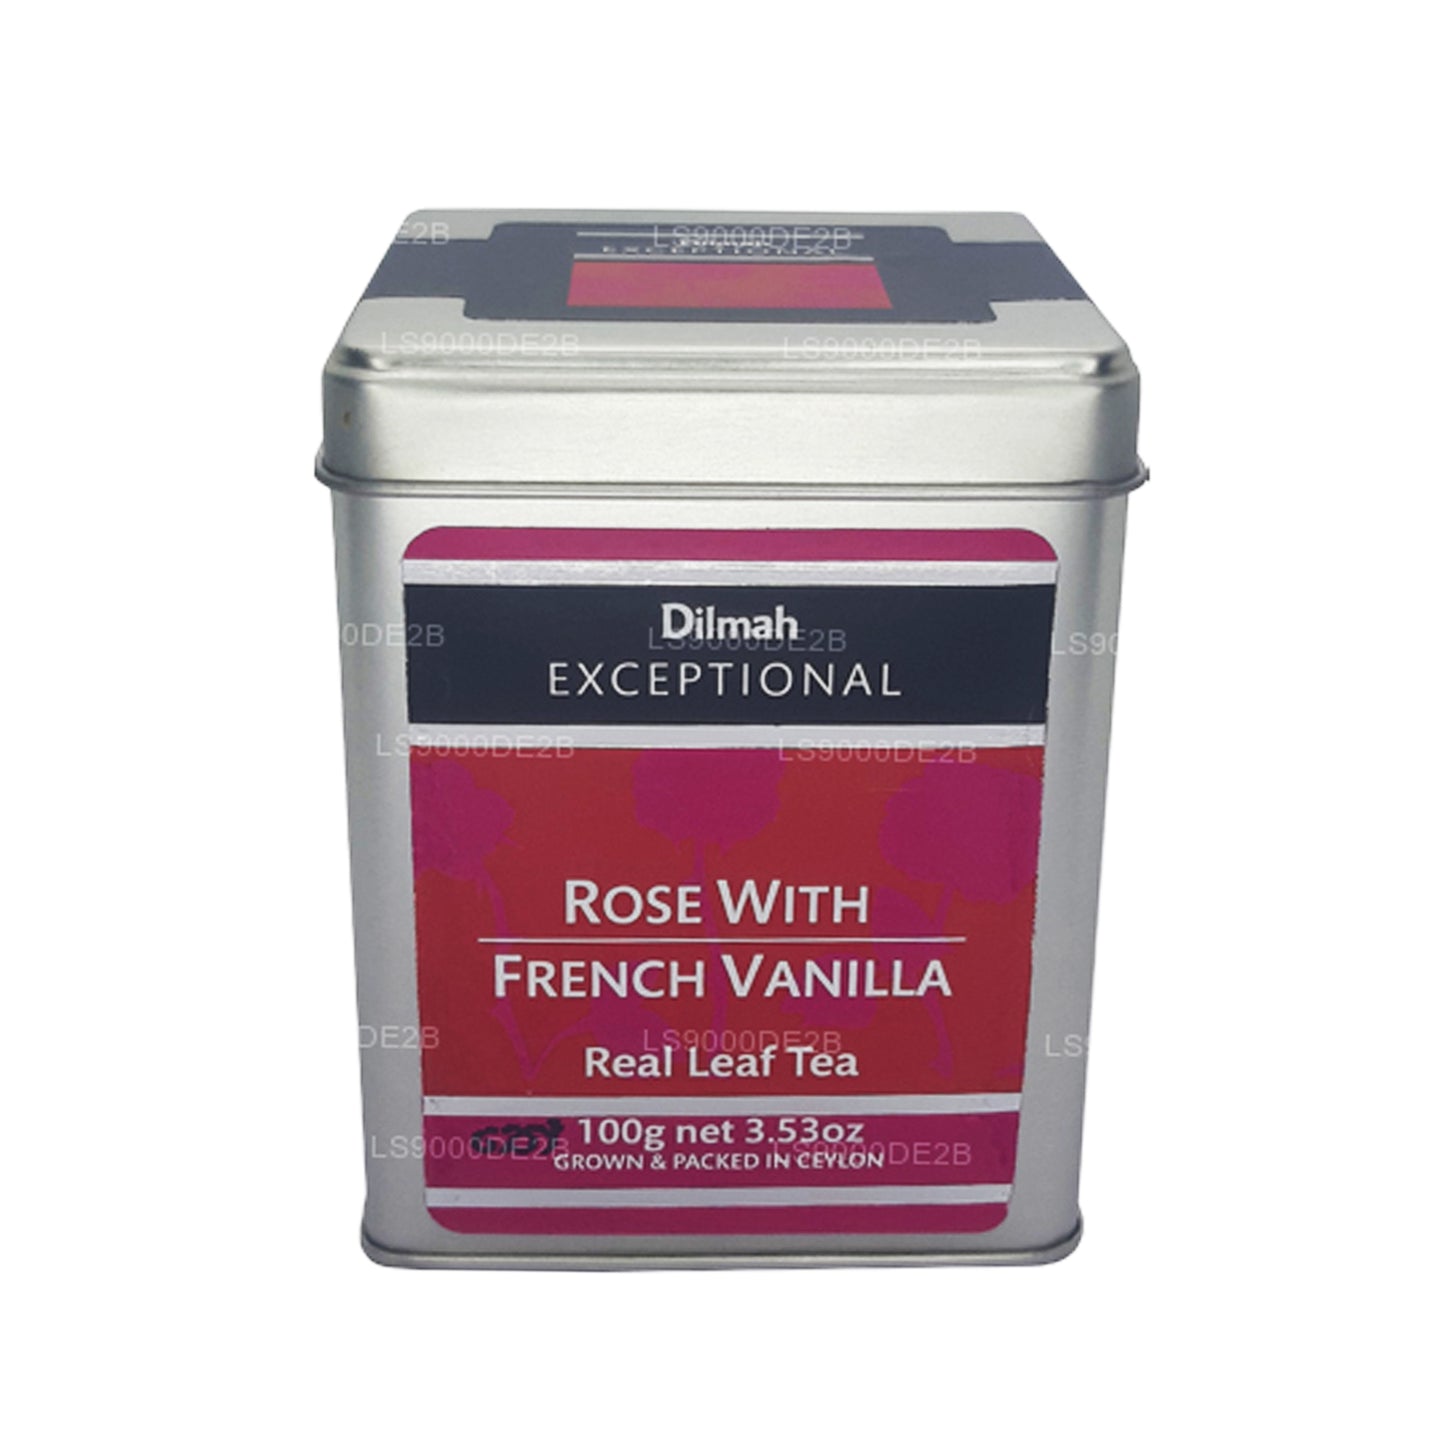 Dilmah Exceptional Rose met Franse vanille thee met echte bladeren (40 g) 20 theezakjes